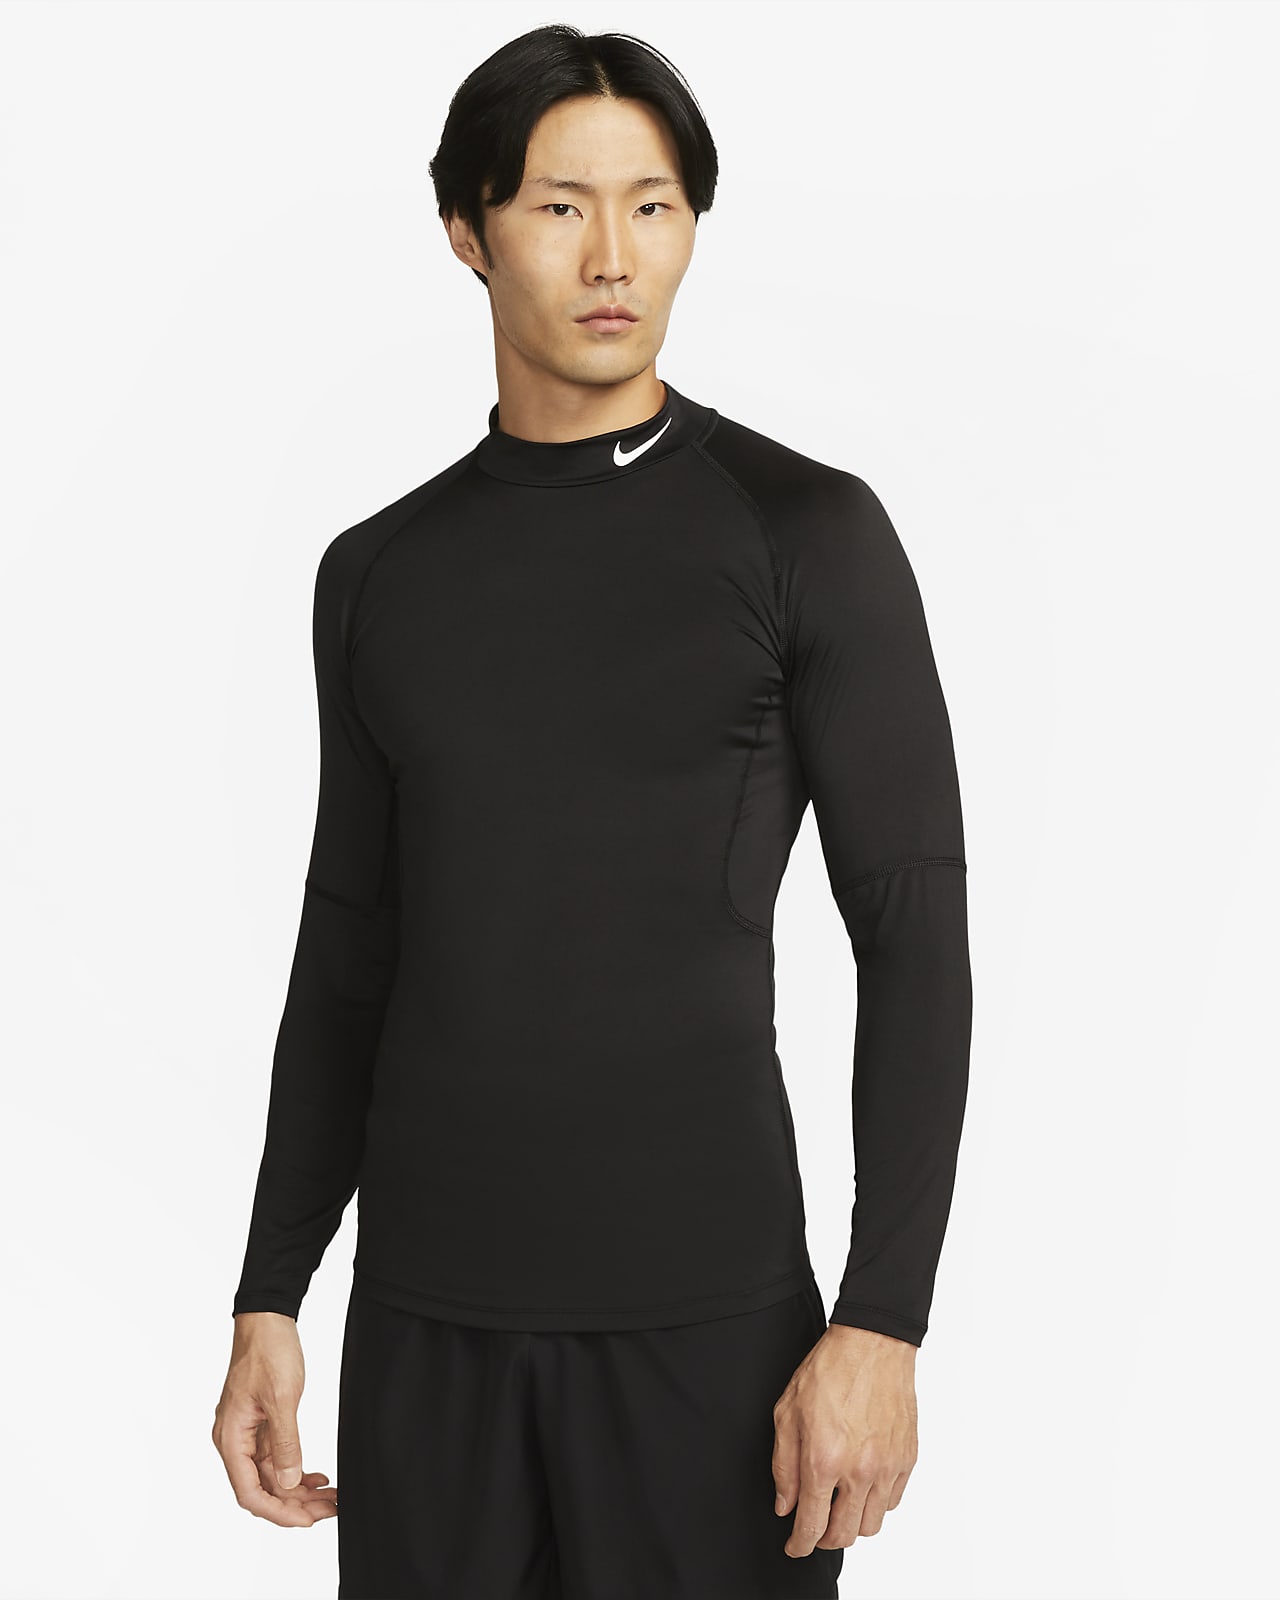 Ανδρική μακρυμάνικη μπλούζα fitness Dri-FIT με ψηλό γιακά Nike Pro